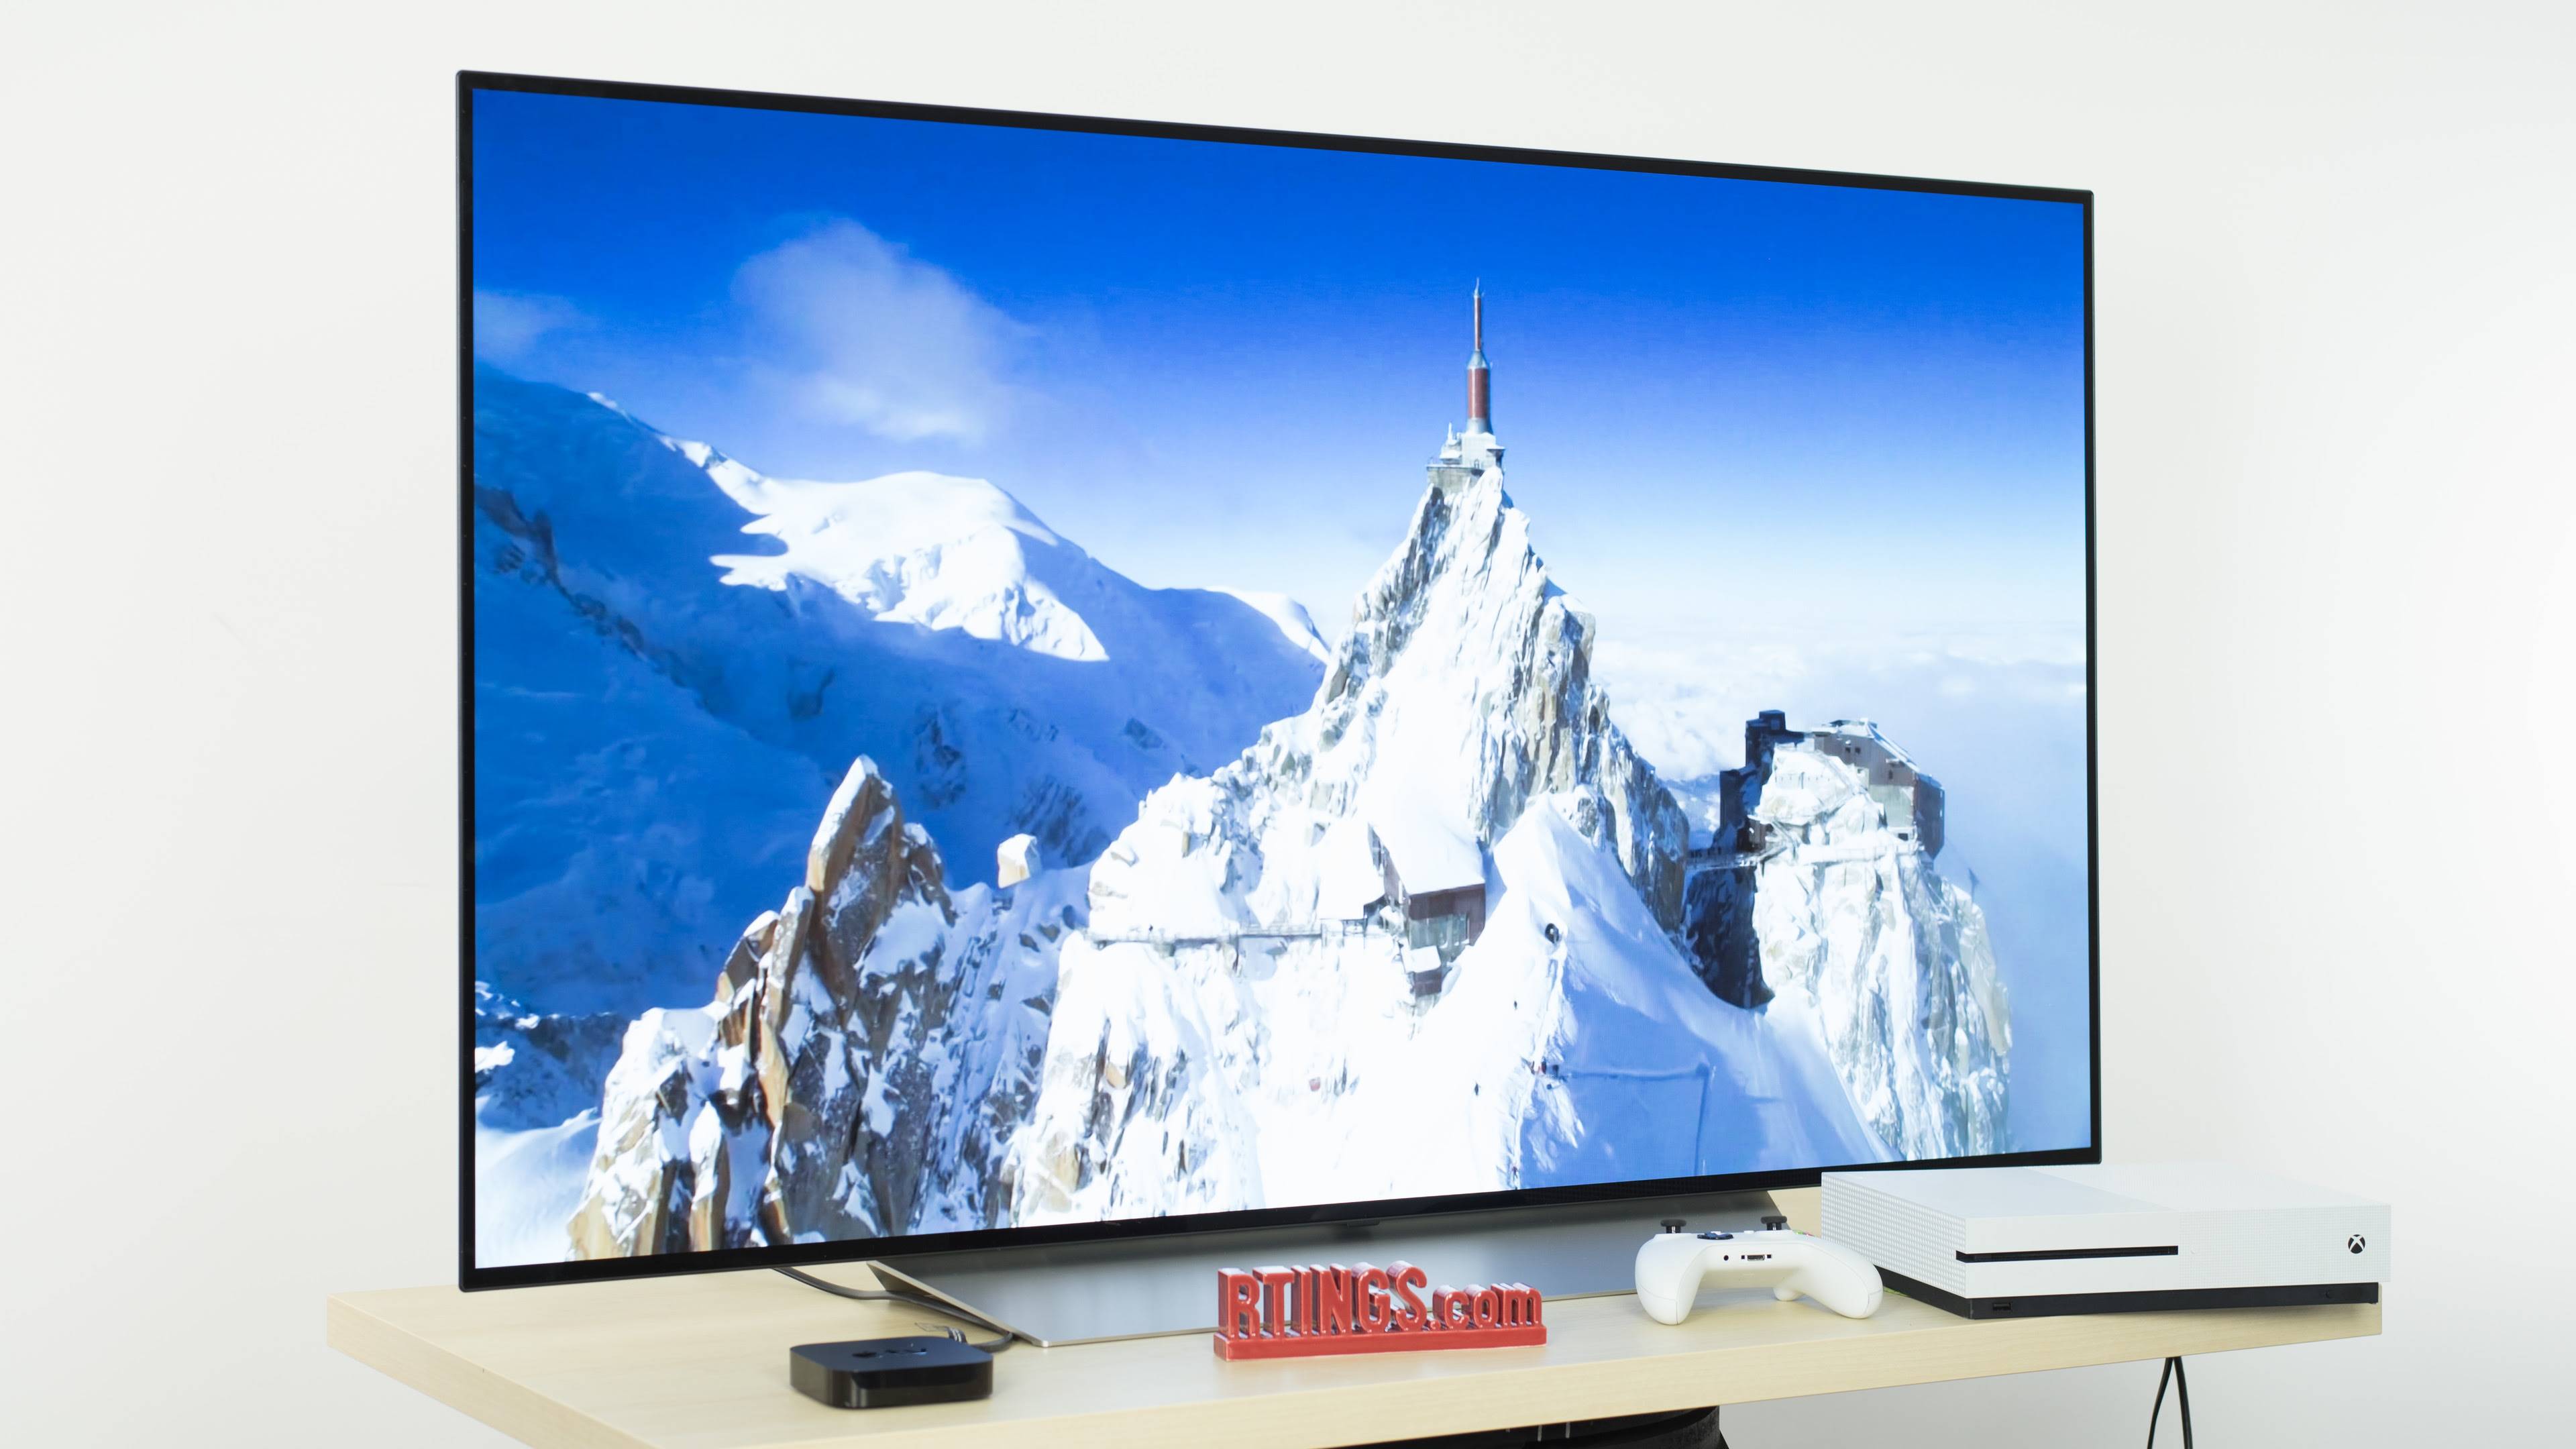 Стоит ли покупать домой 4к-телевизор: все за и против